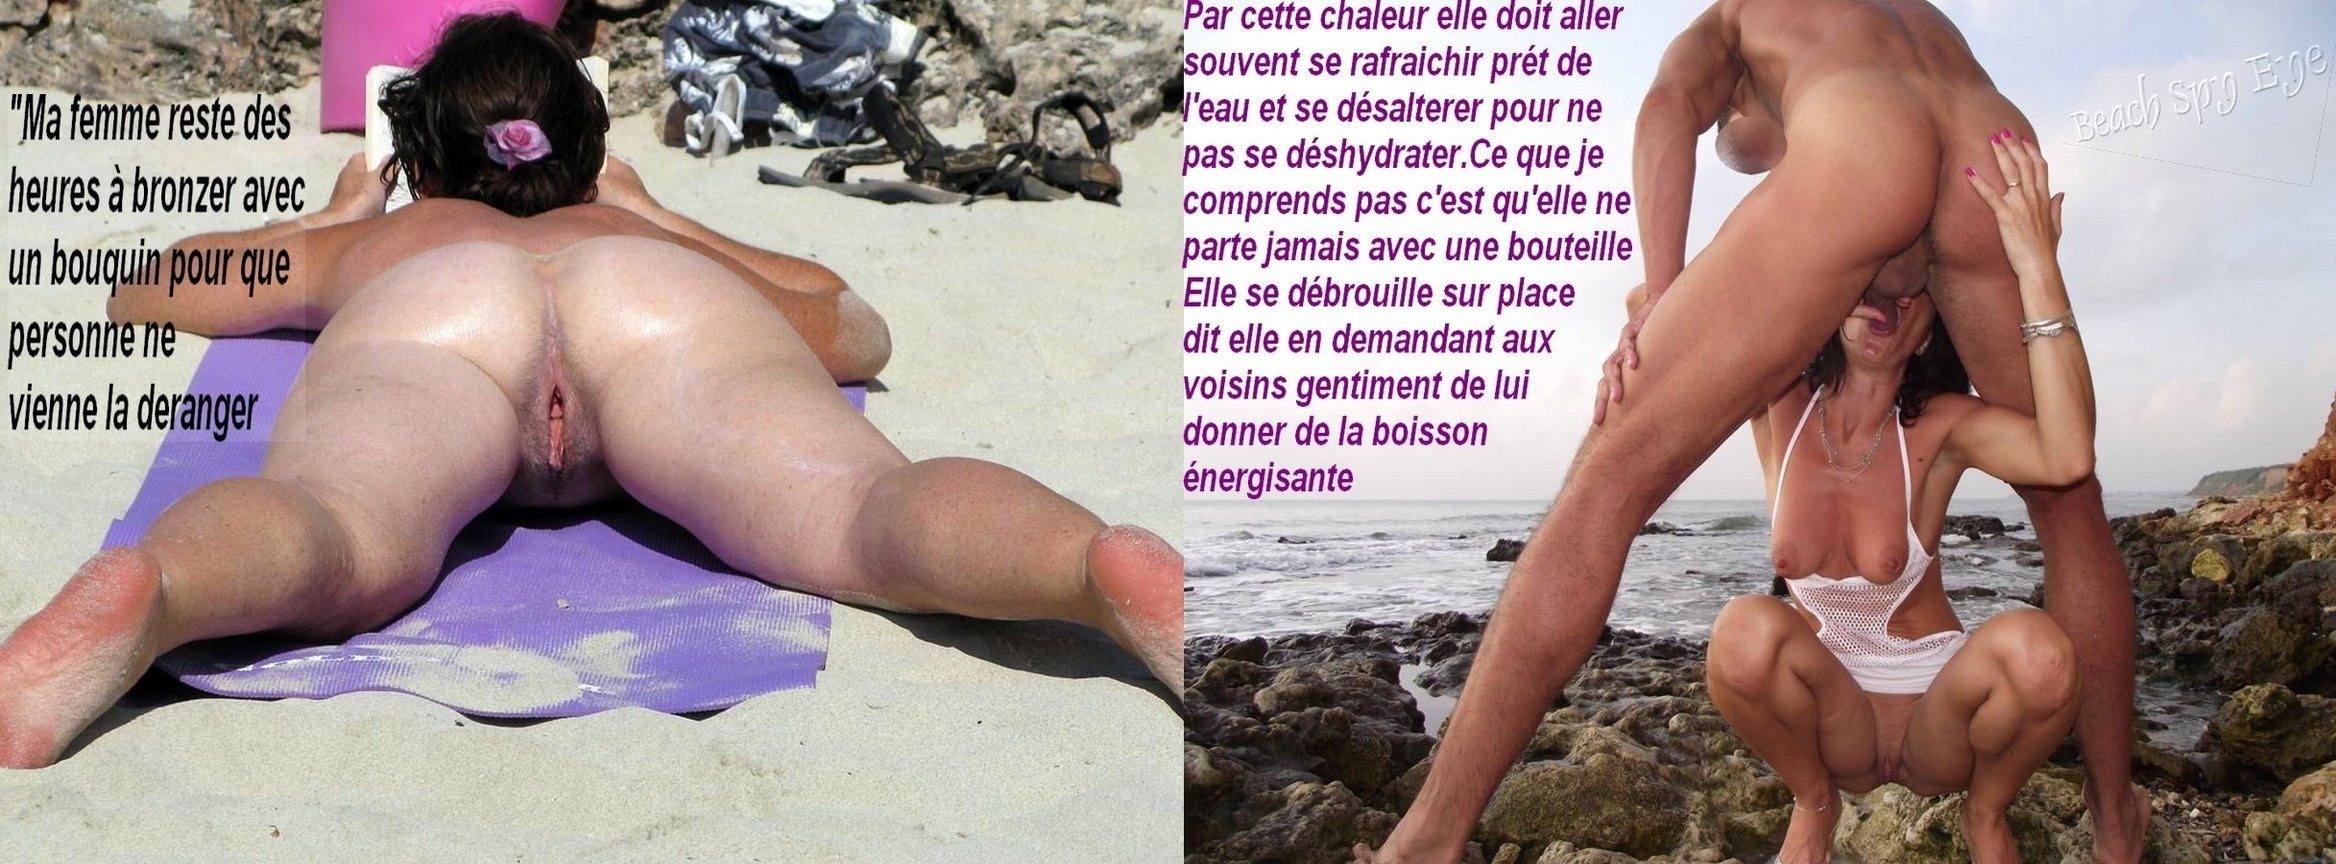 жена на пляже порно рассказы фото 38